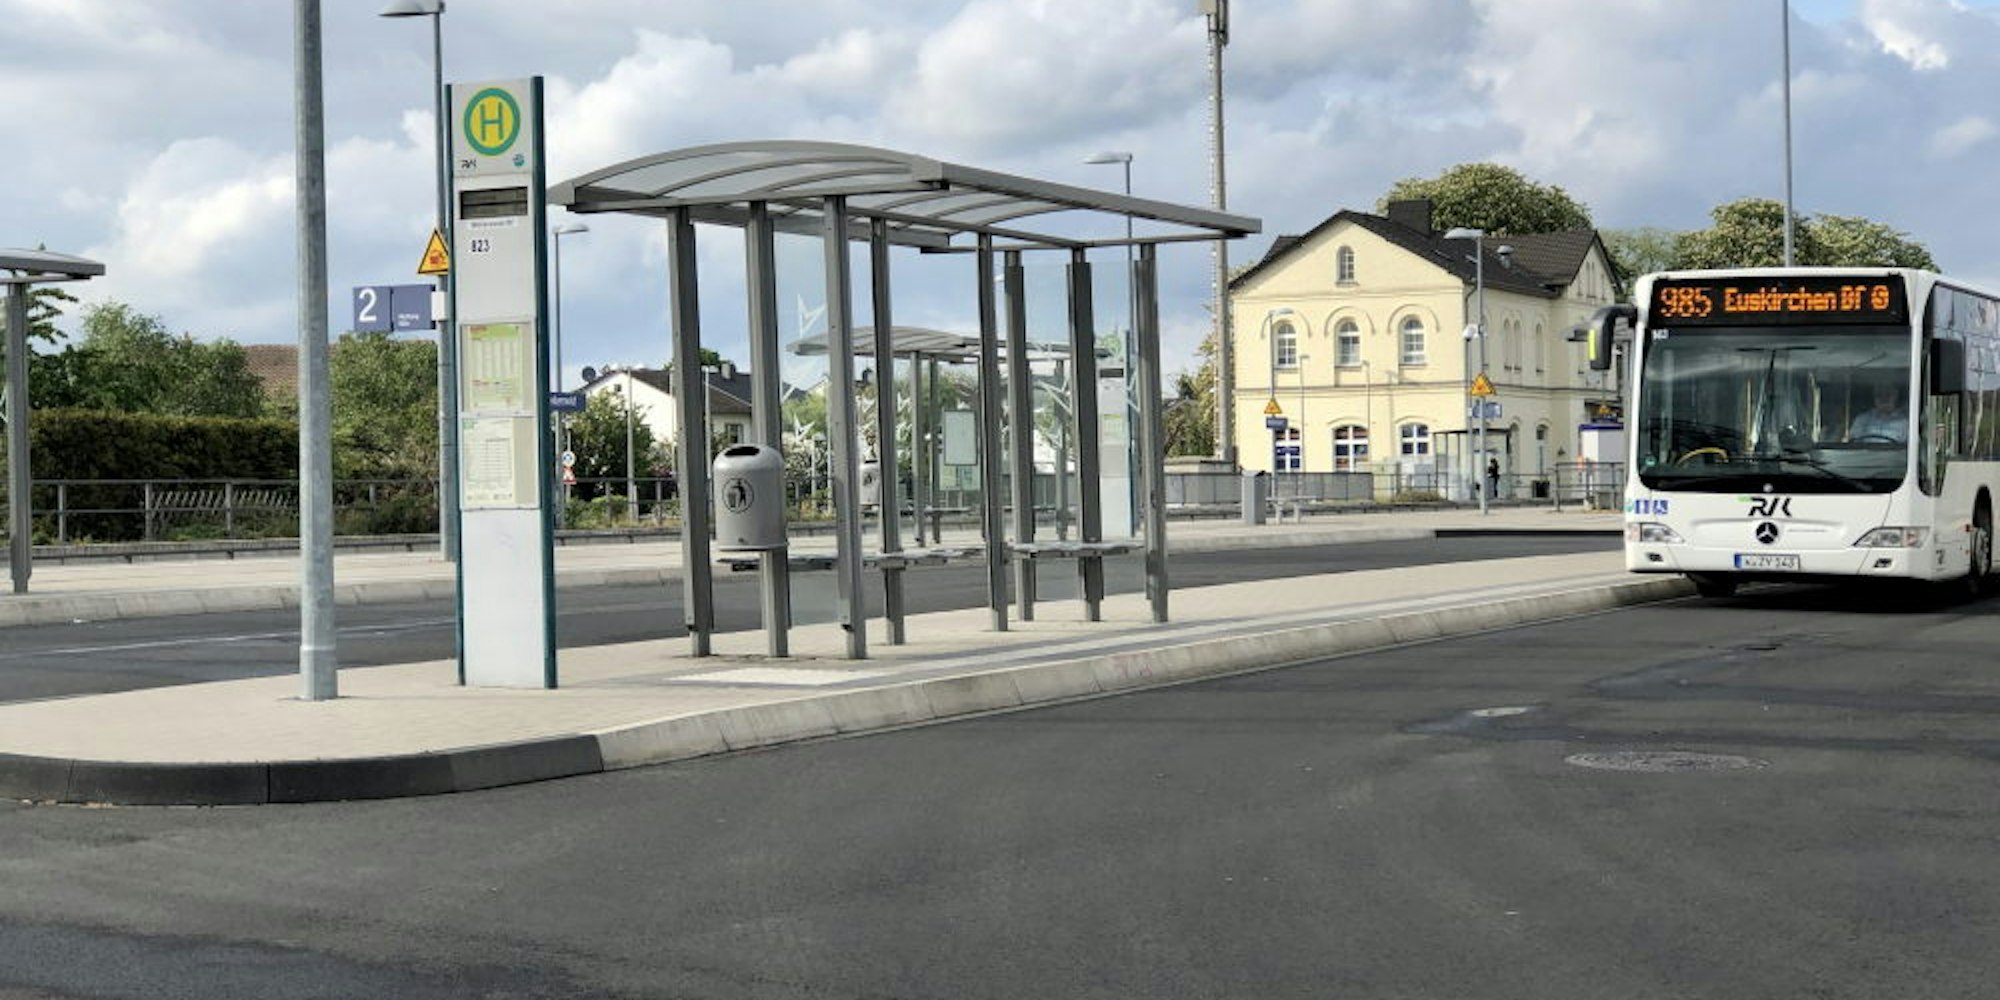 Der Busbahnhof in Weilerswist soll bepflanzt werden, sobald der Gemeindeverwaltung dafür Fördergelder zur Verfügung stehen, wie Bürgermeisterin Anne Horst erklärte.